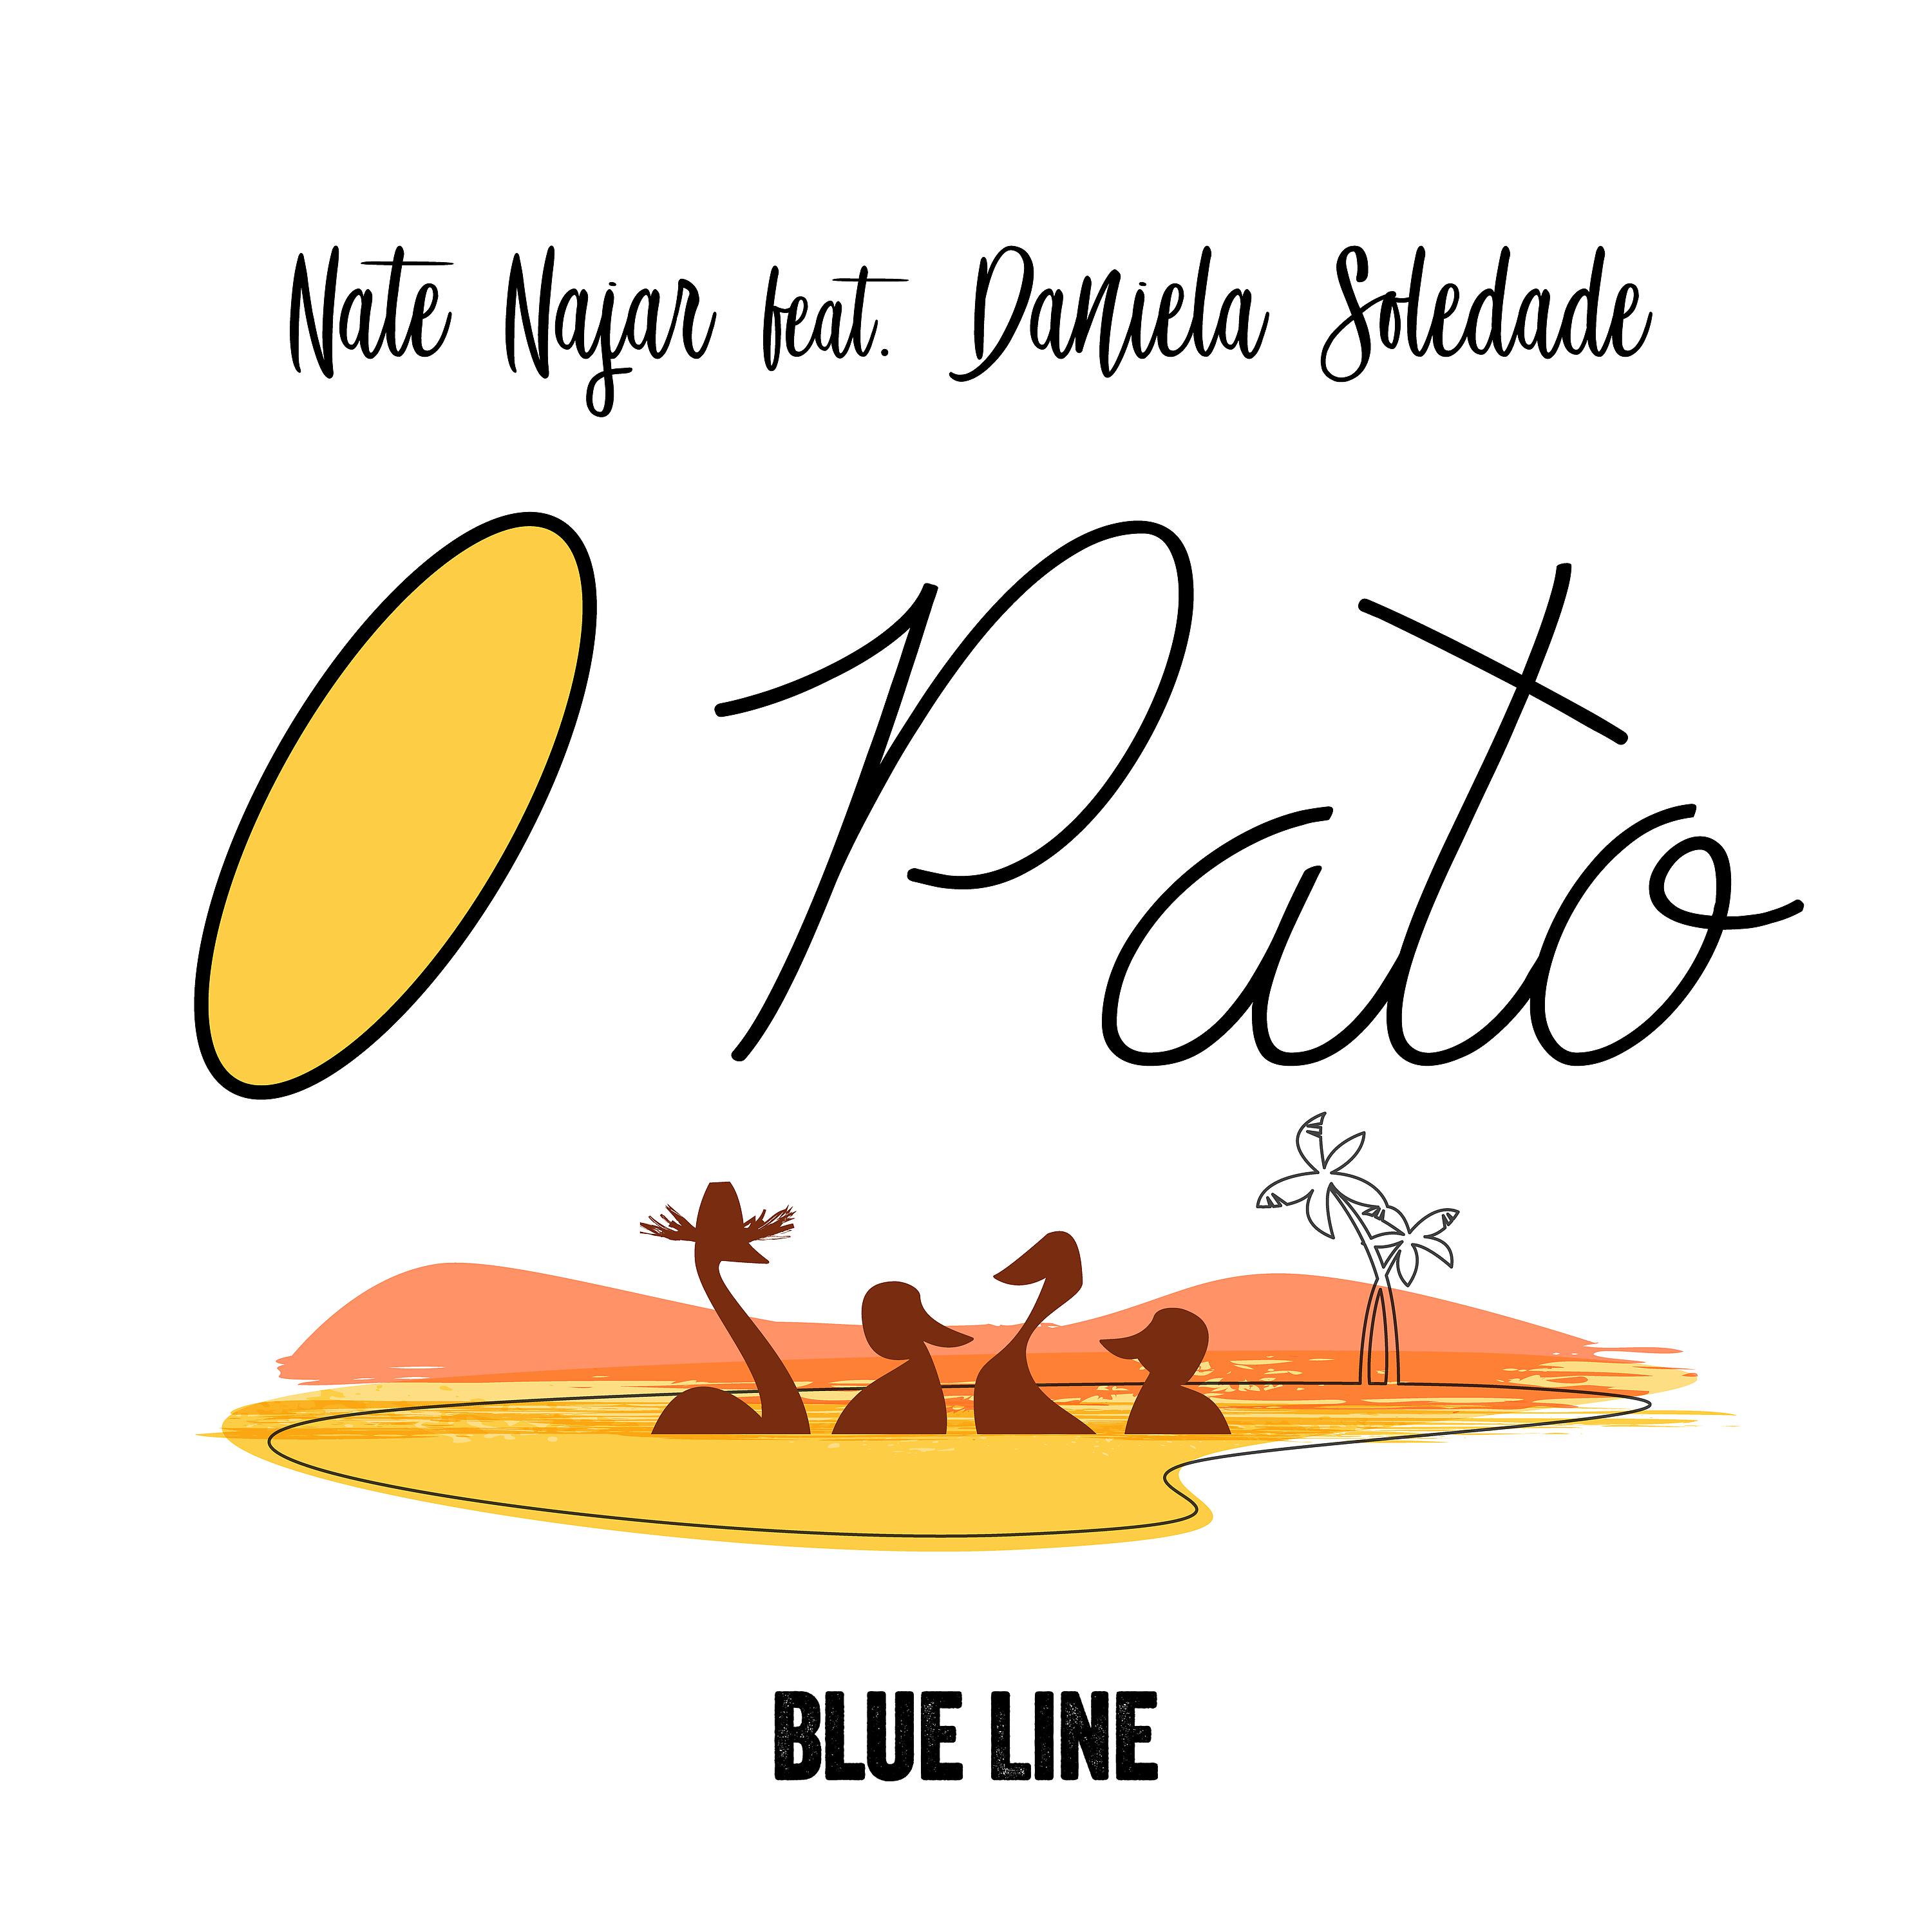 Постер альбома O Pato